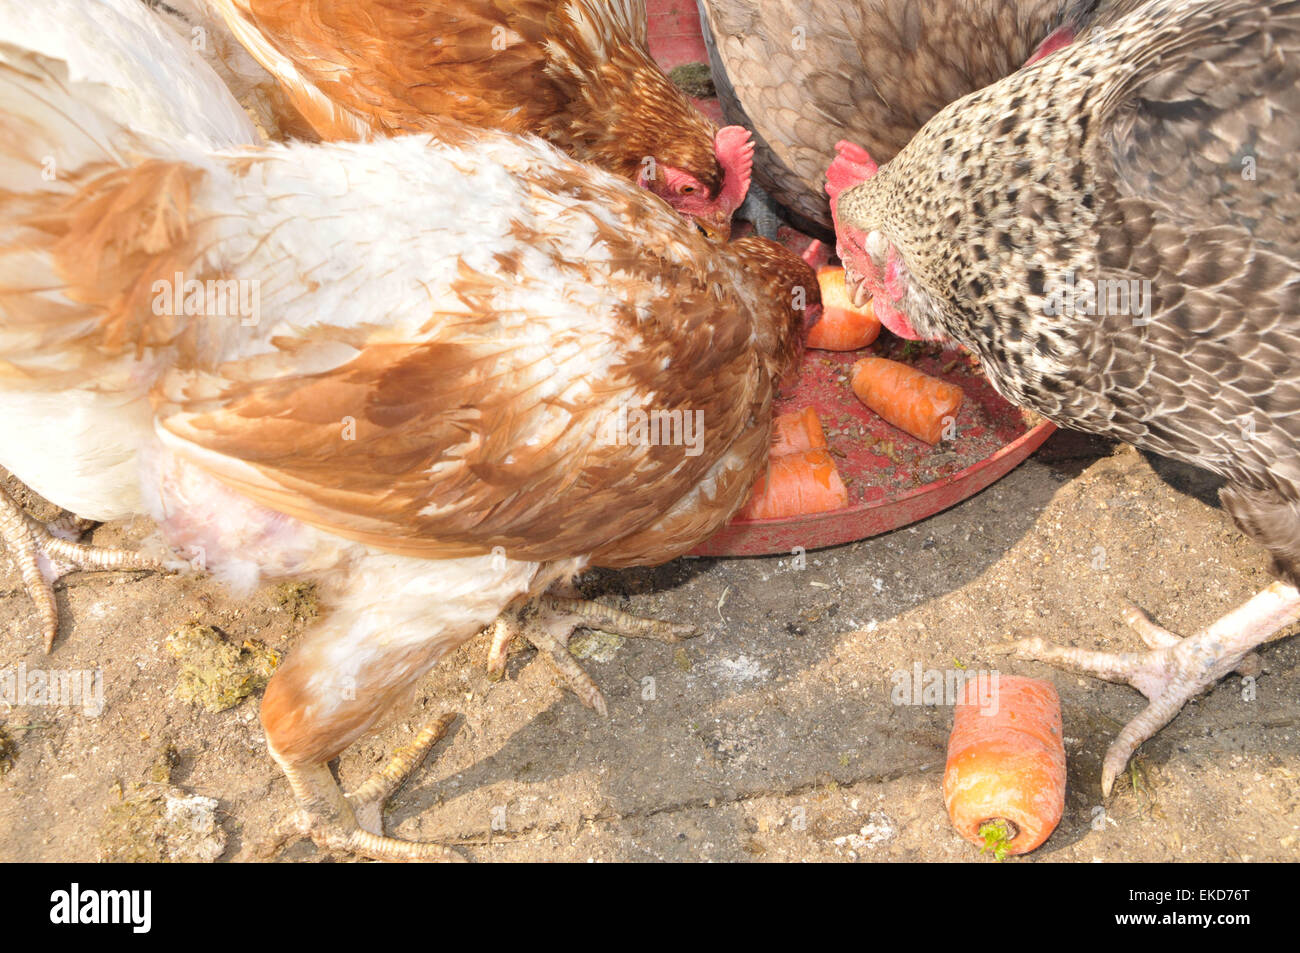 Cuatro pollos de rango libre disfrutando de unos restos vegetales saludables al aire libre Foto de stock